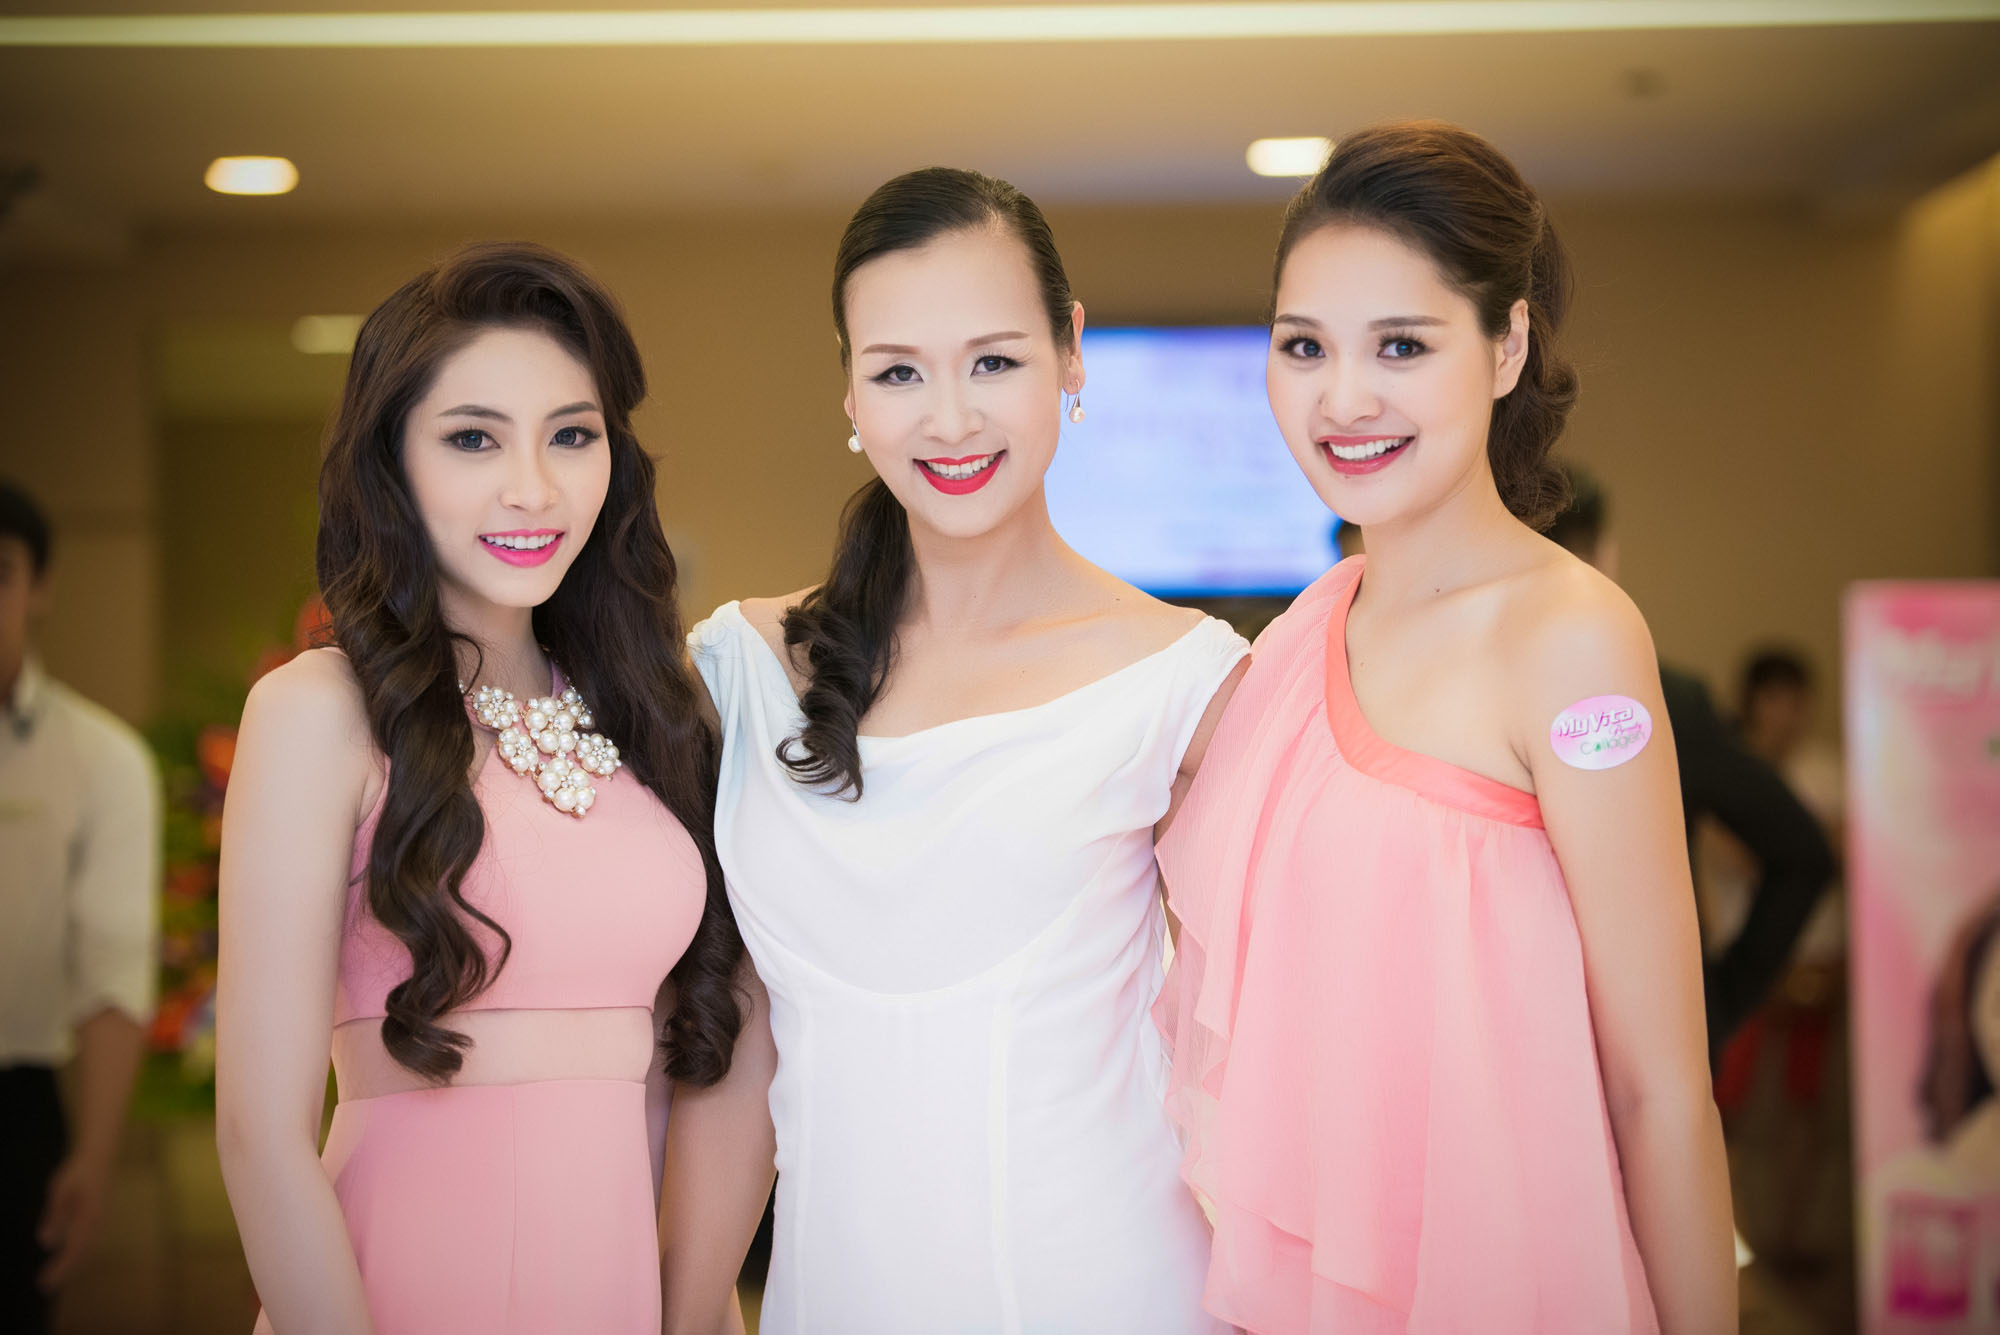 Hoa hậu Đại dương 2014 Đặng Thu Thảo thu hút sự chú ý của đêm tiệc với chiếc đầm hồng kem.